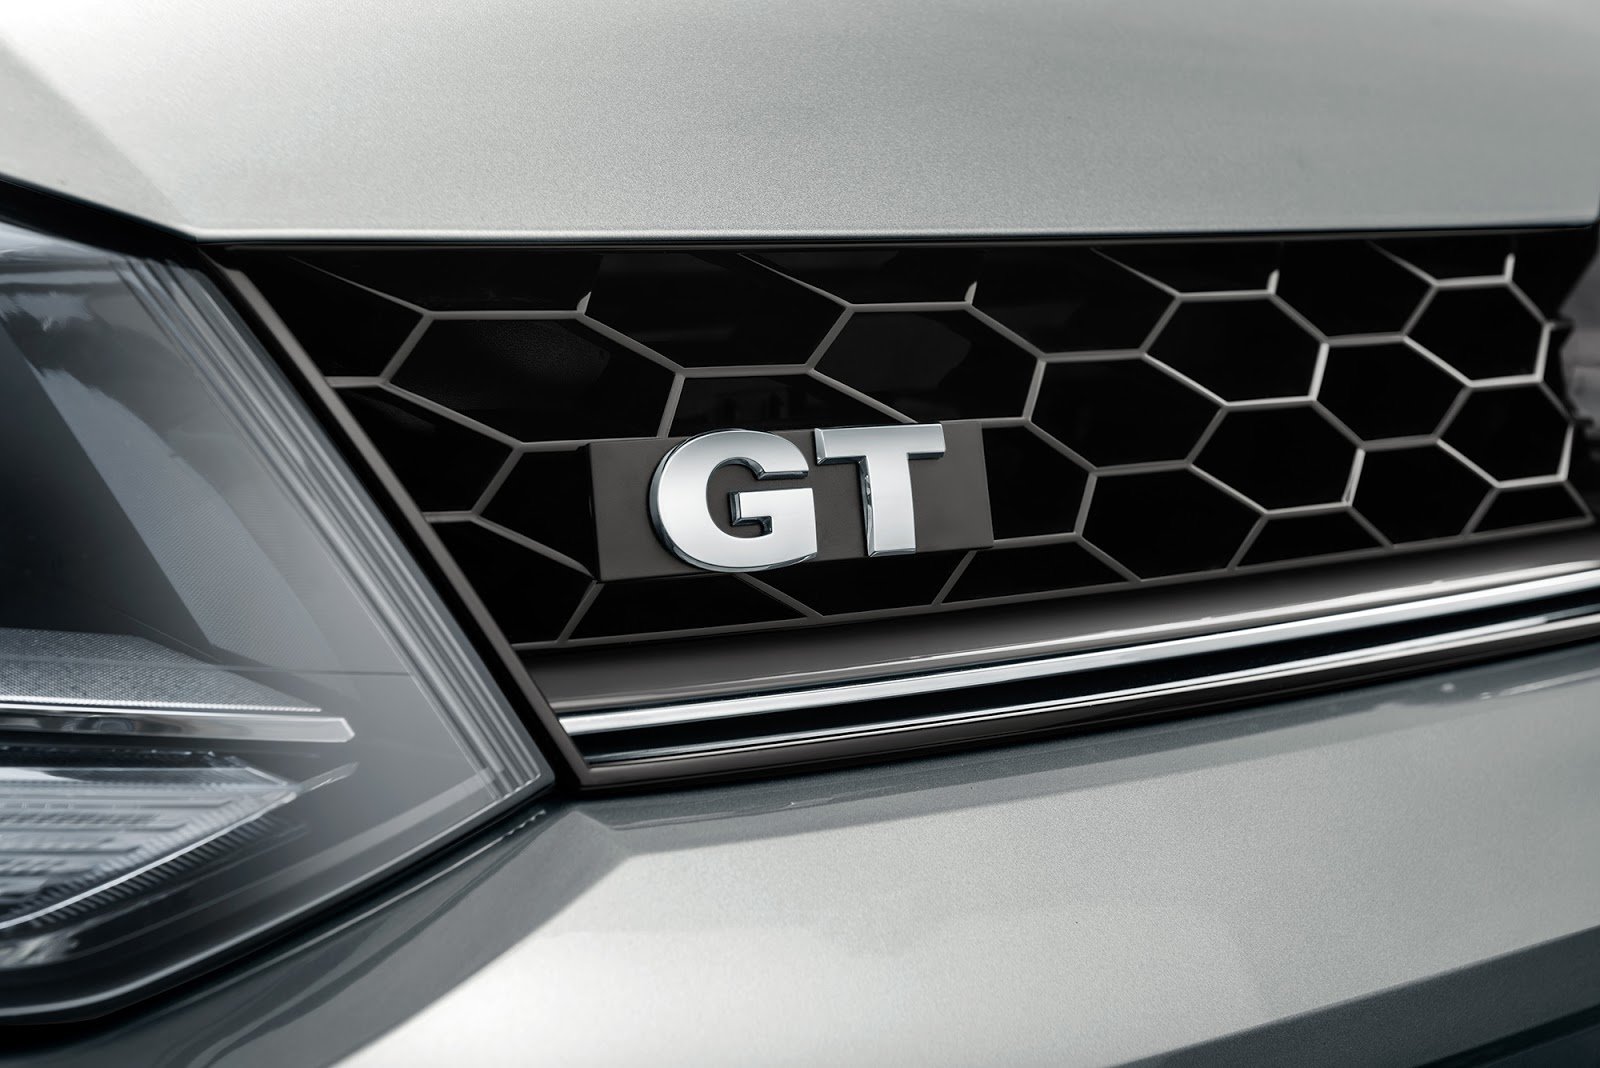 Volkswagen Polo GT je nejsportovnější variantou s tříprostorovou karosérií.